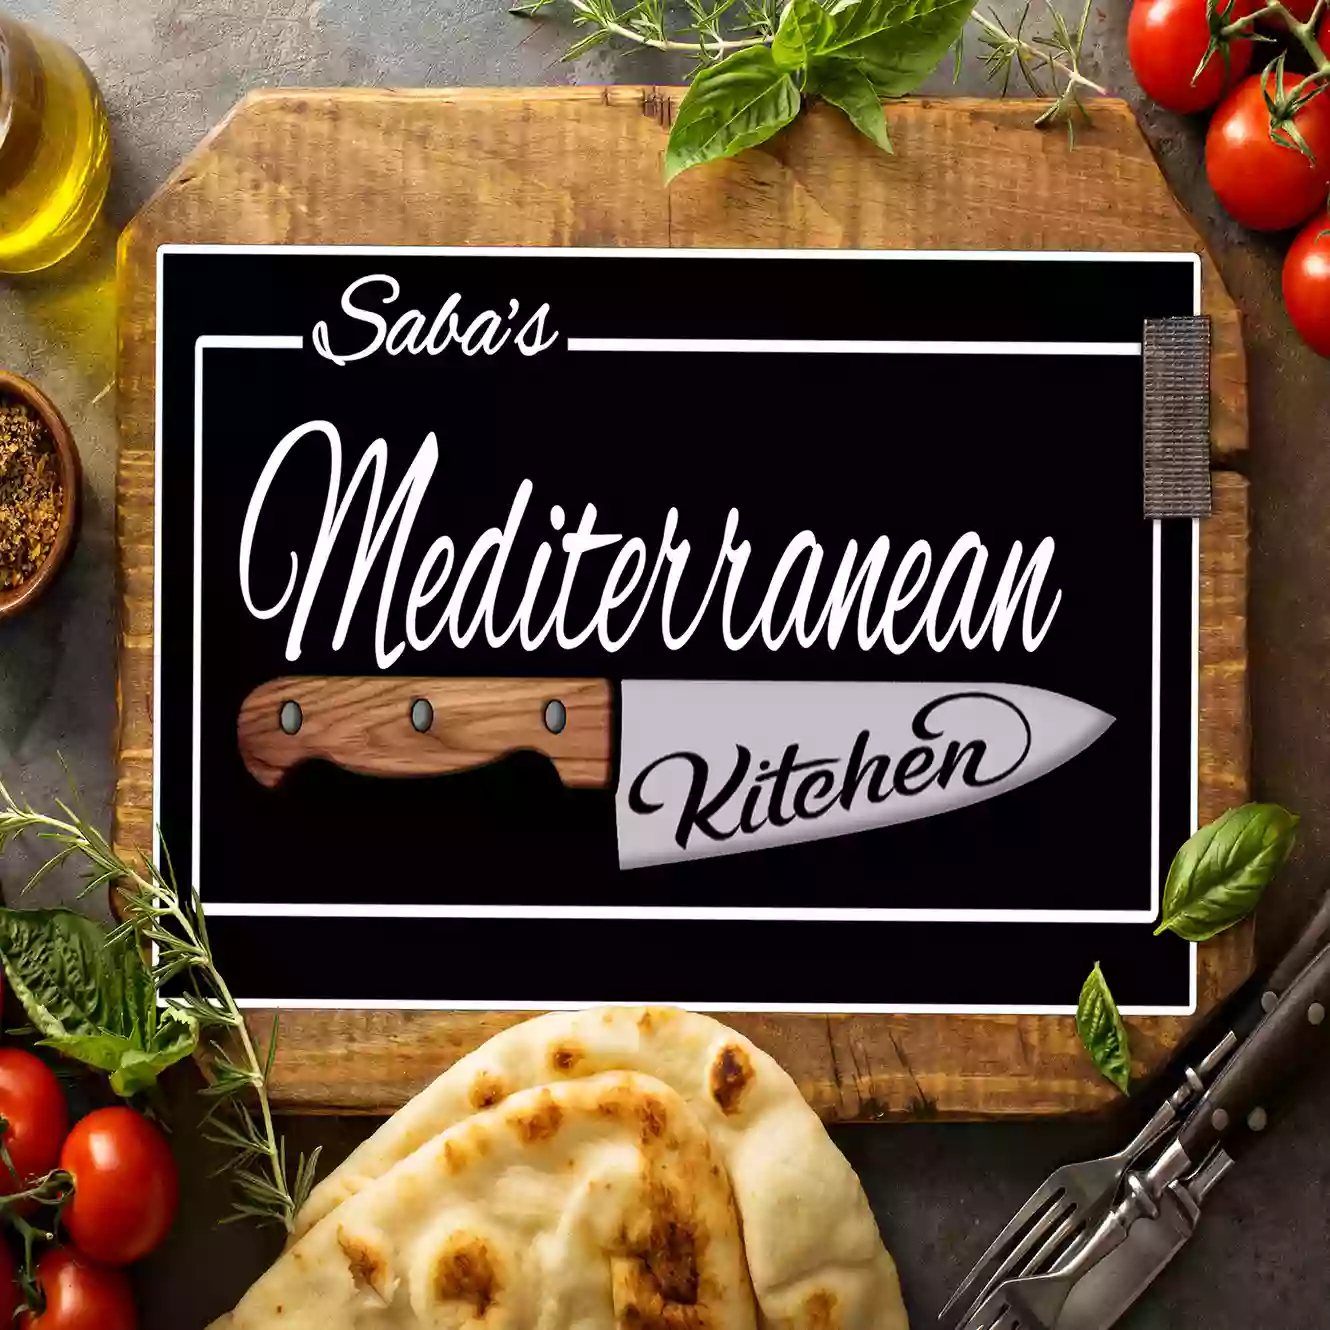 Saba's Mediterranean Kitchen